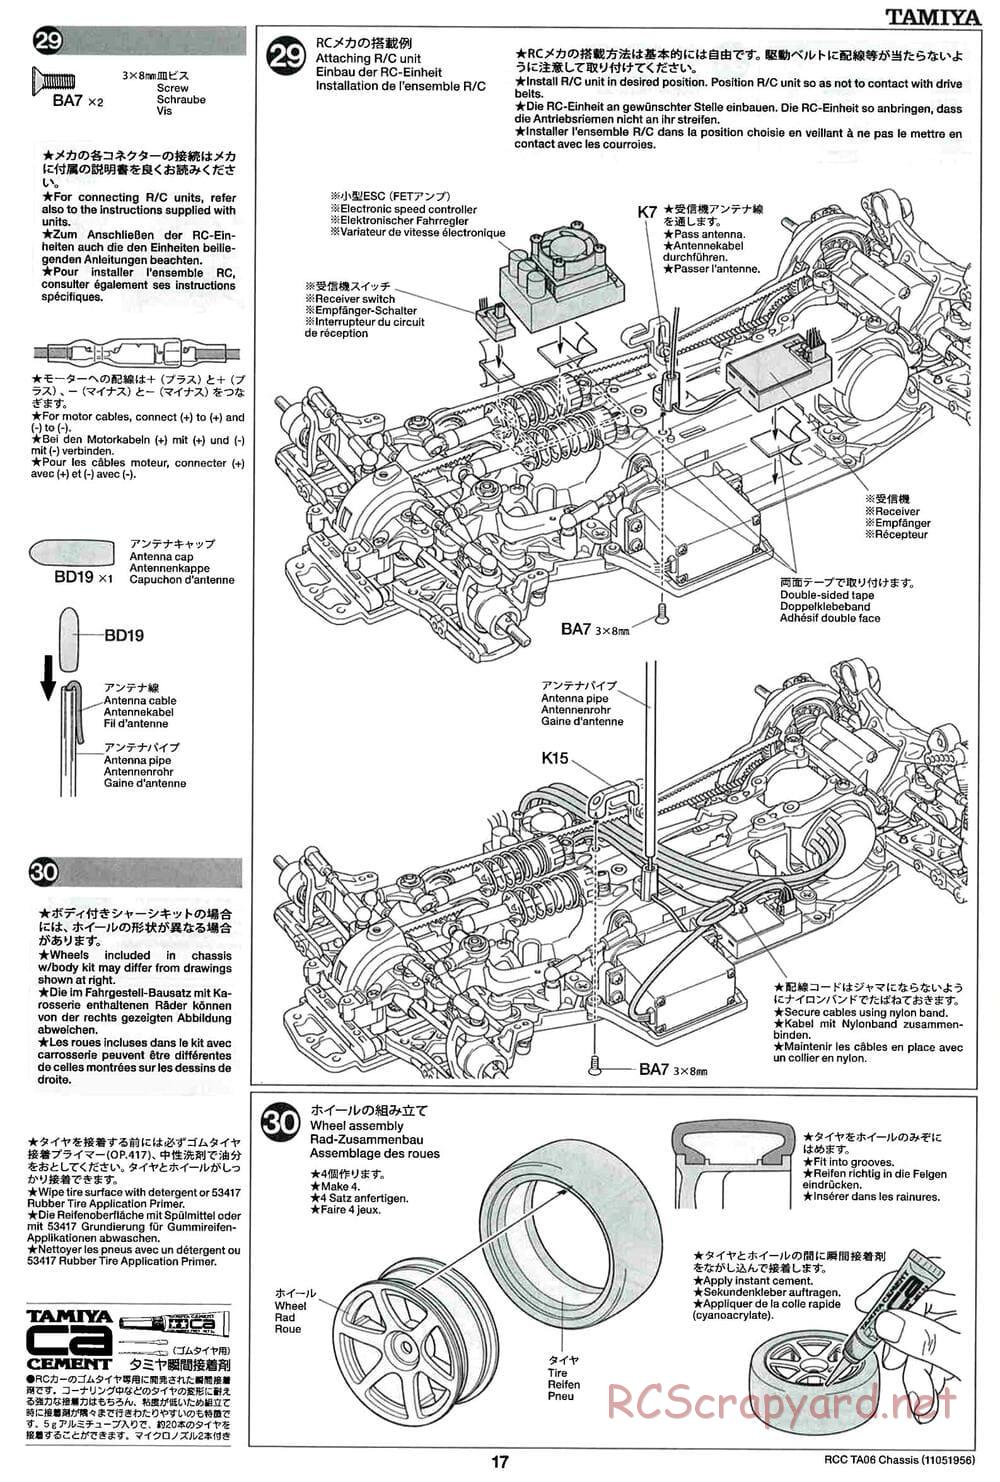 Tamiya - TA06 Chassis - Manual - Page 17